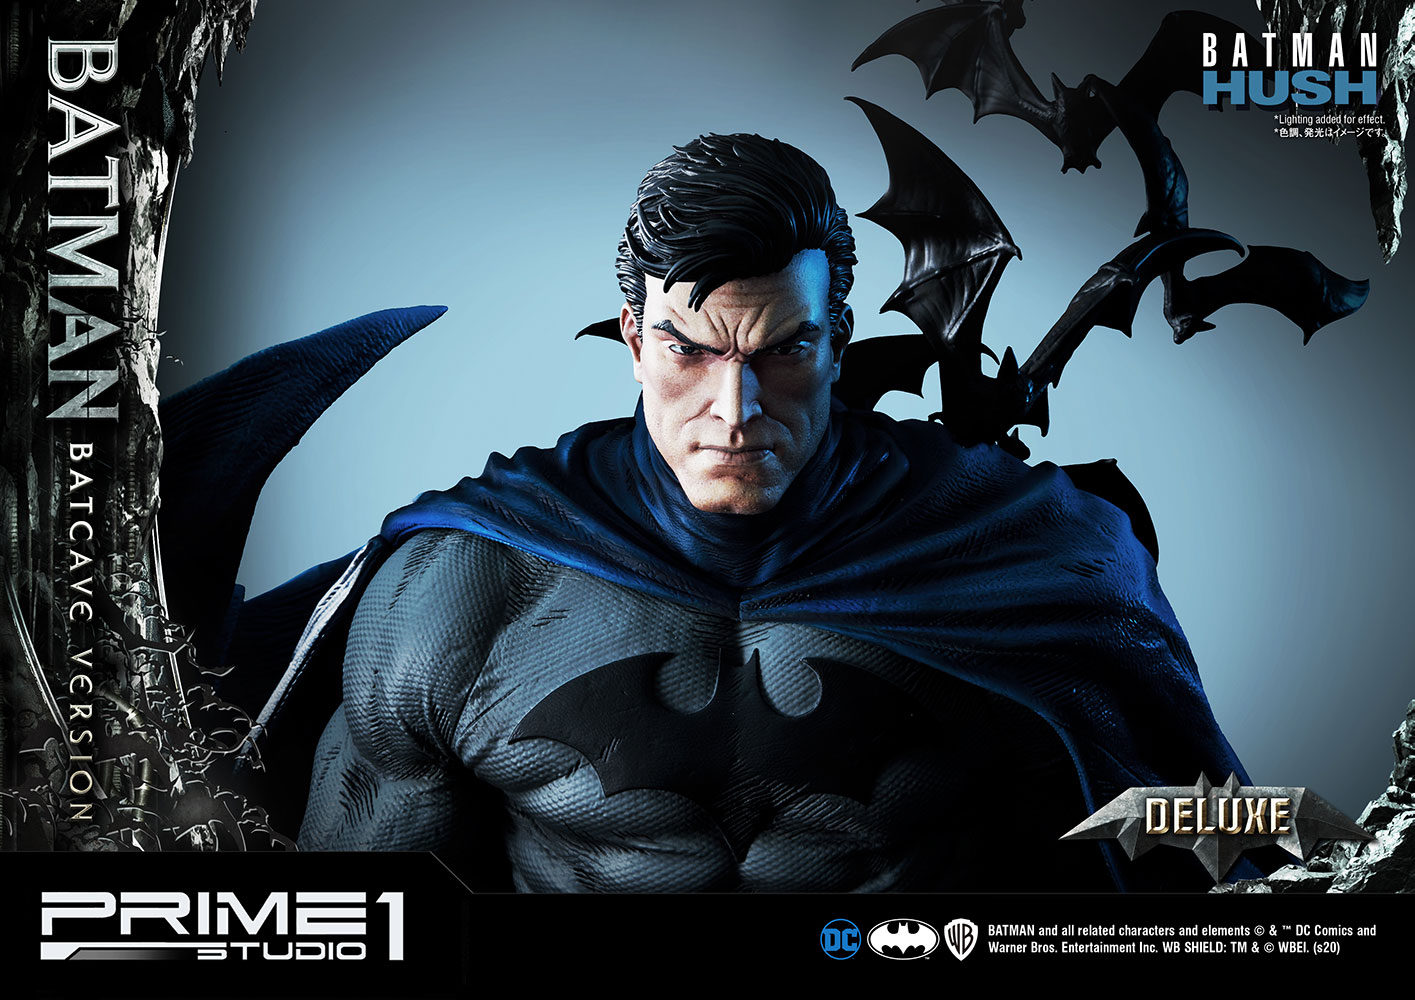 Batman Batcave Deluxe Version (Prototype Shown) View 28